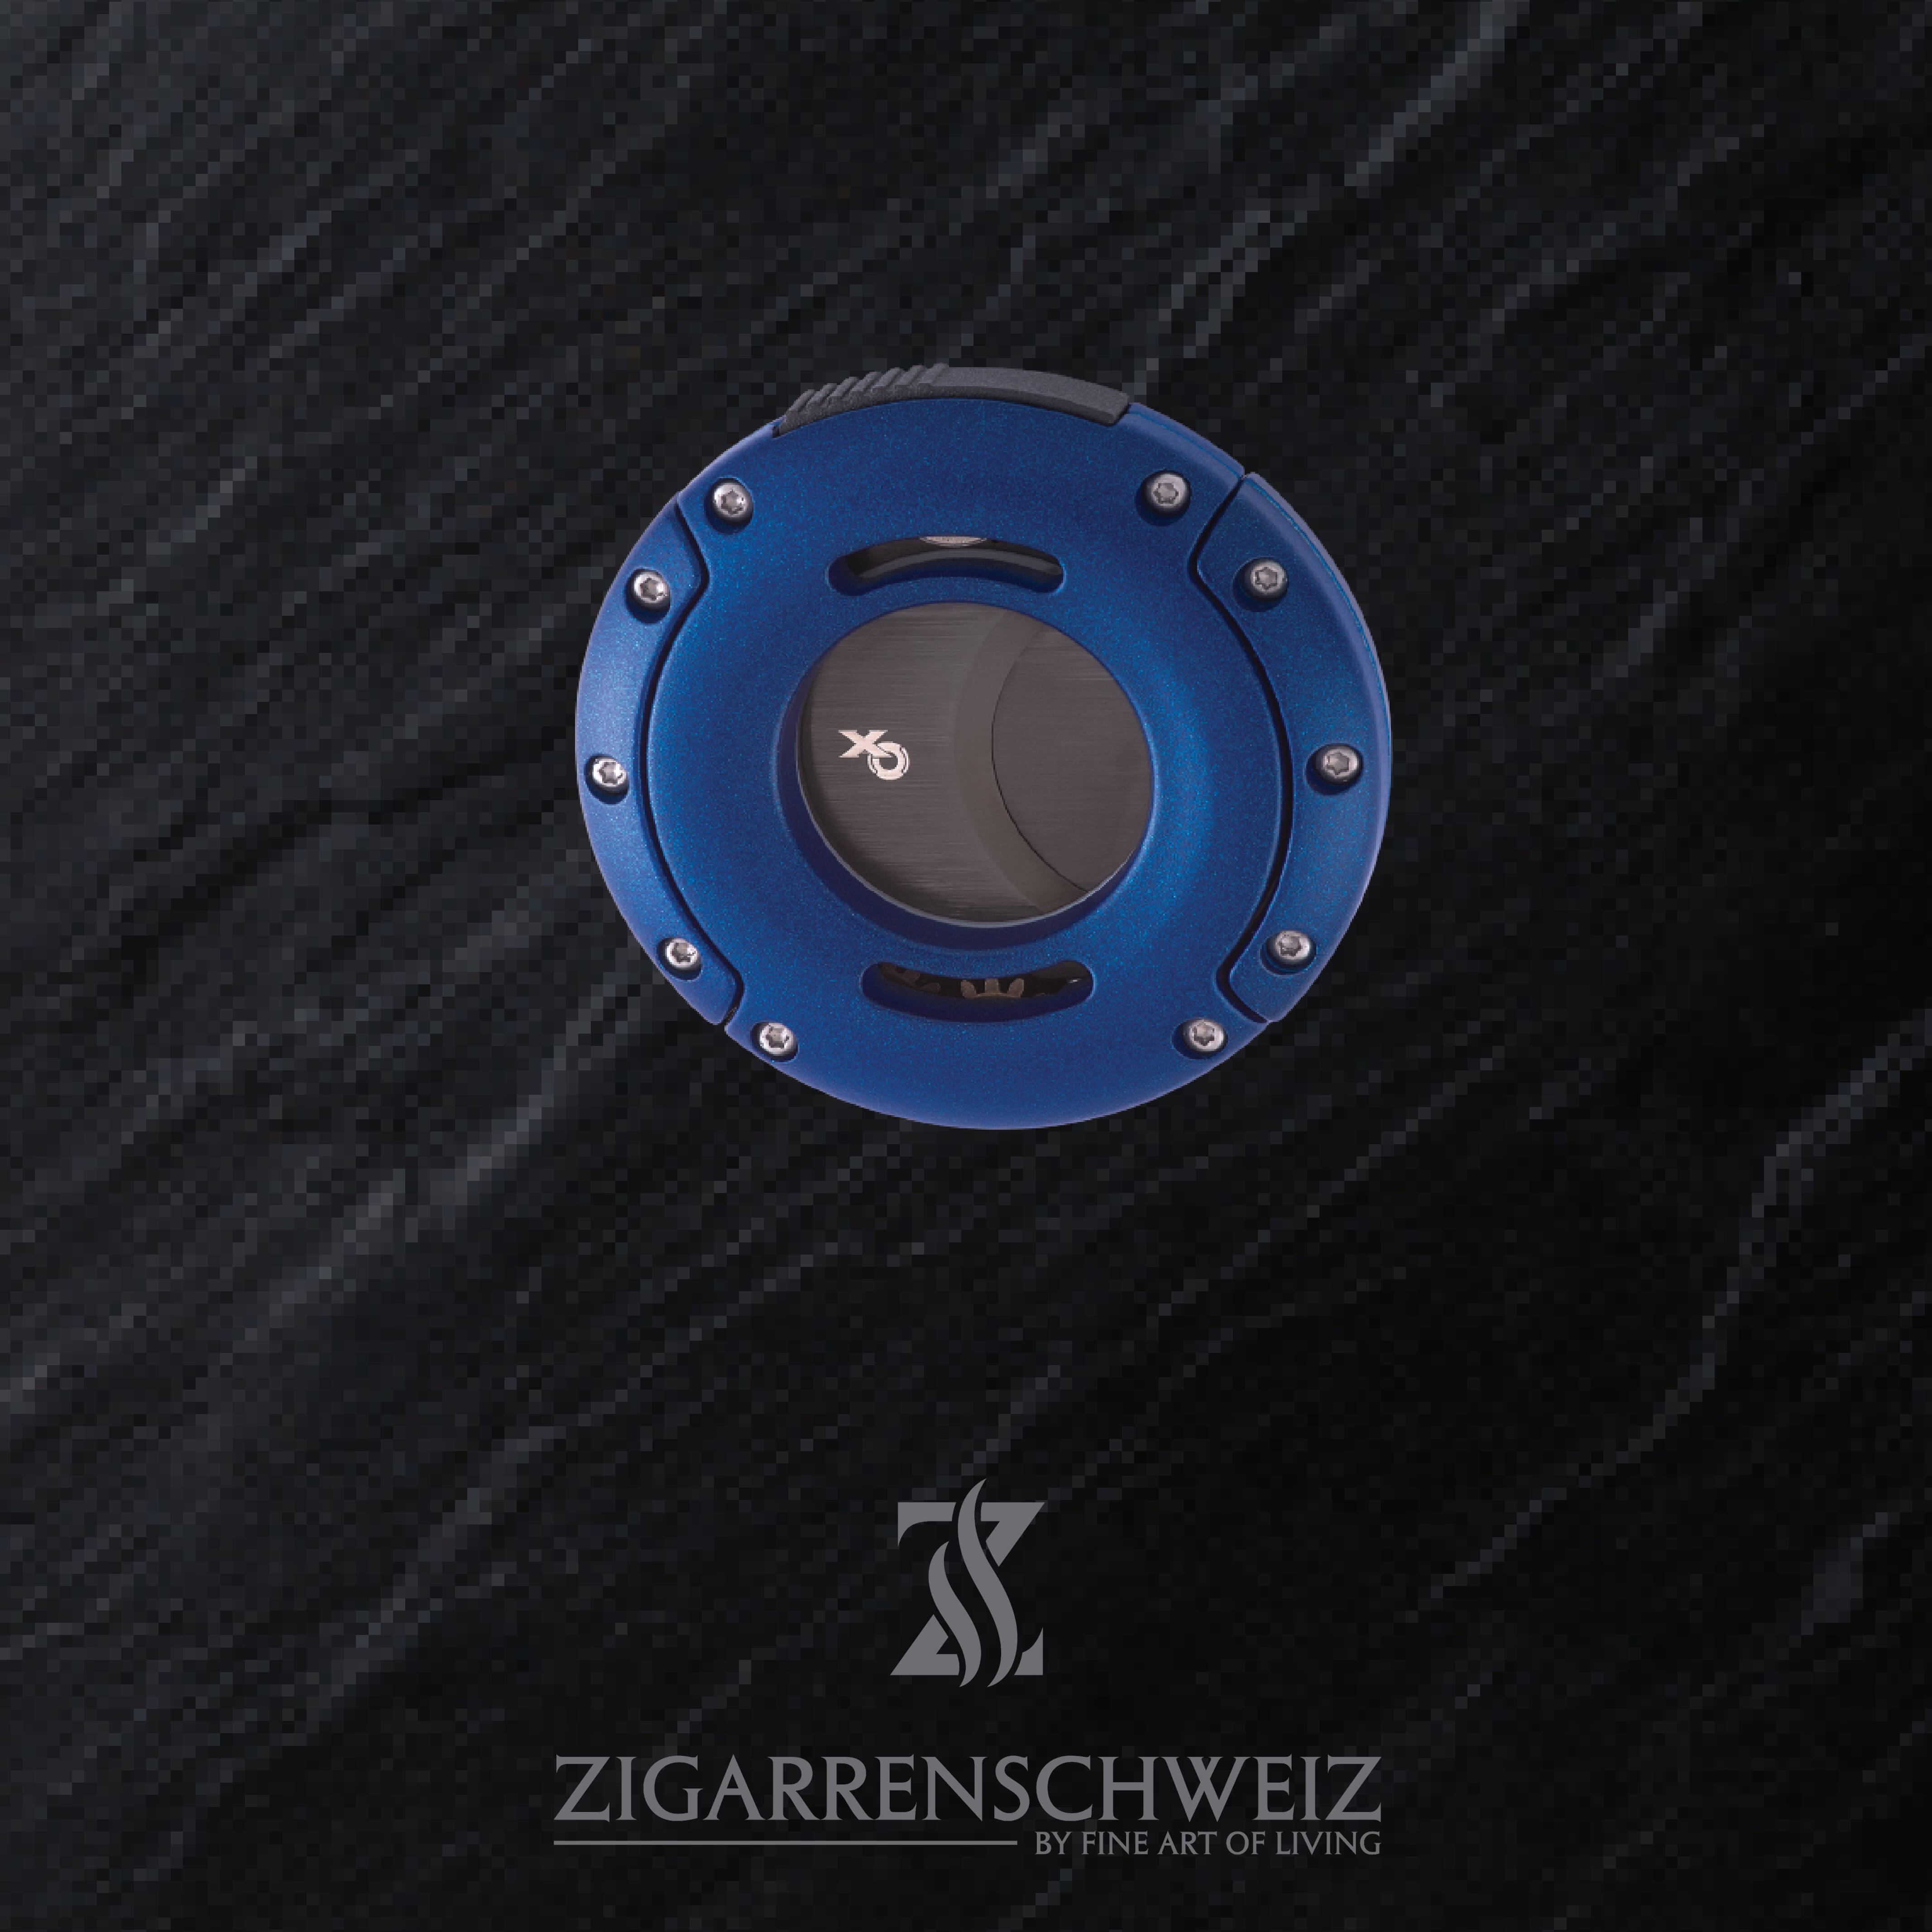 Xikar XO Zigarren Cutter, Farbe Gehäuse: Blau, Farbe Klingen: Schwarz, geschlossen